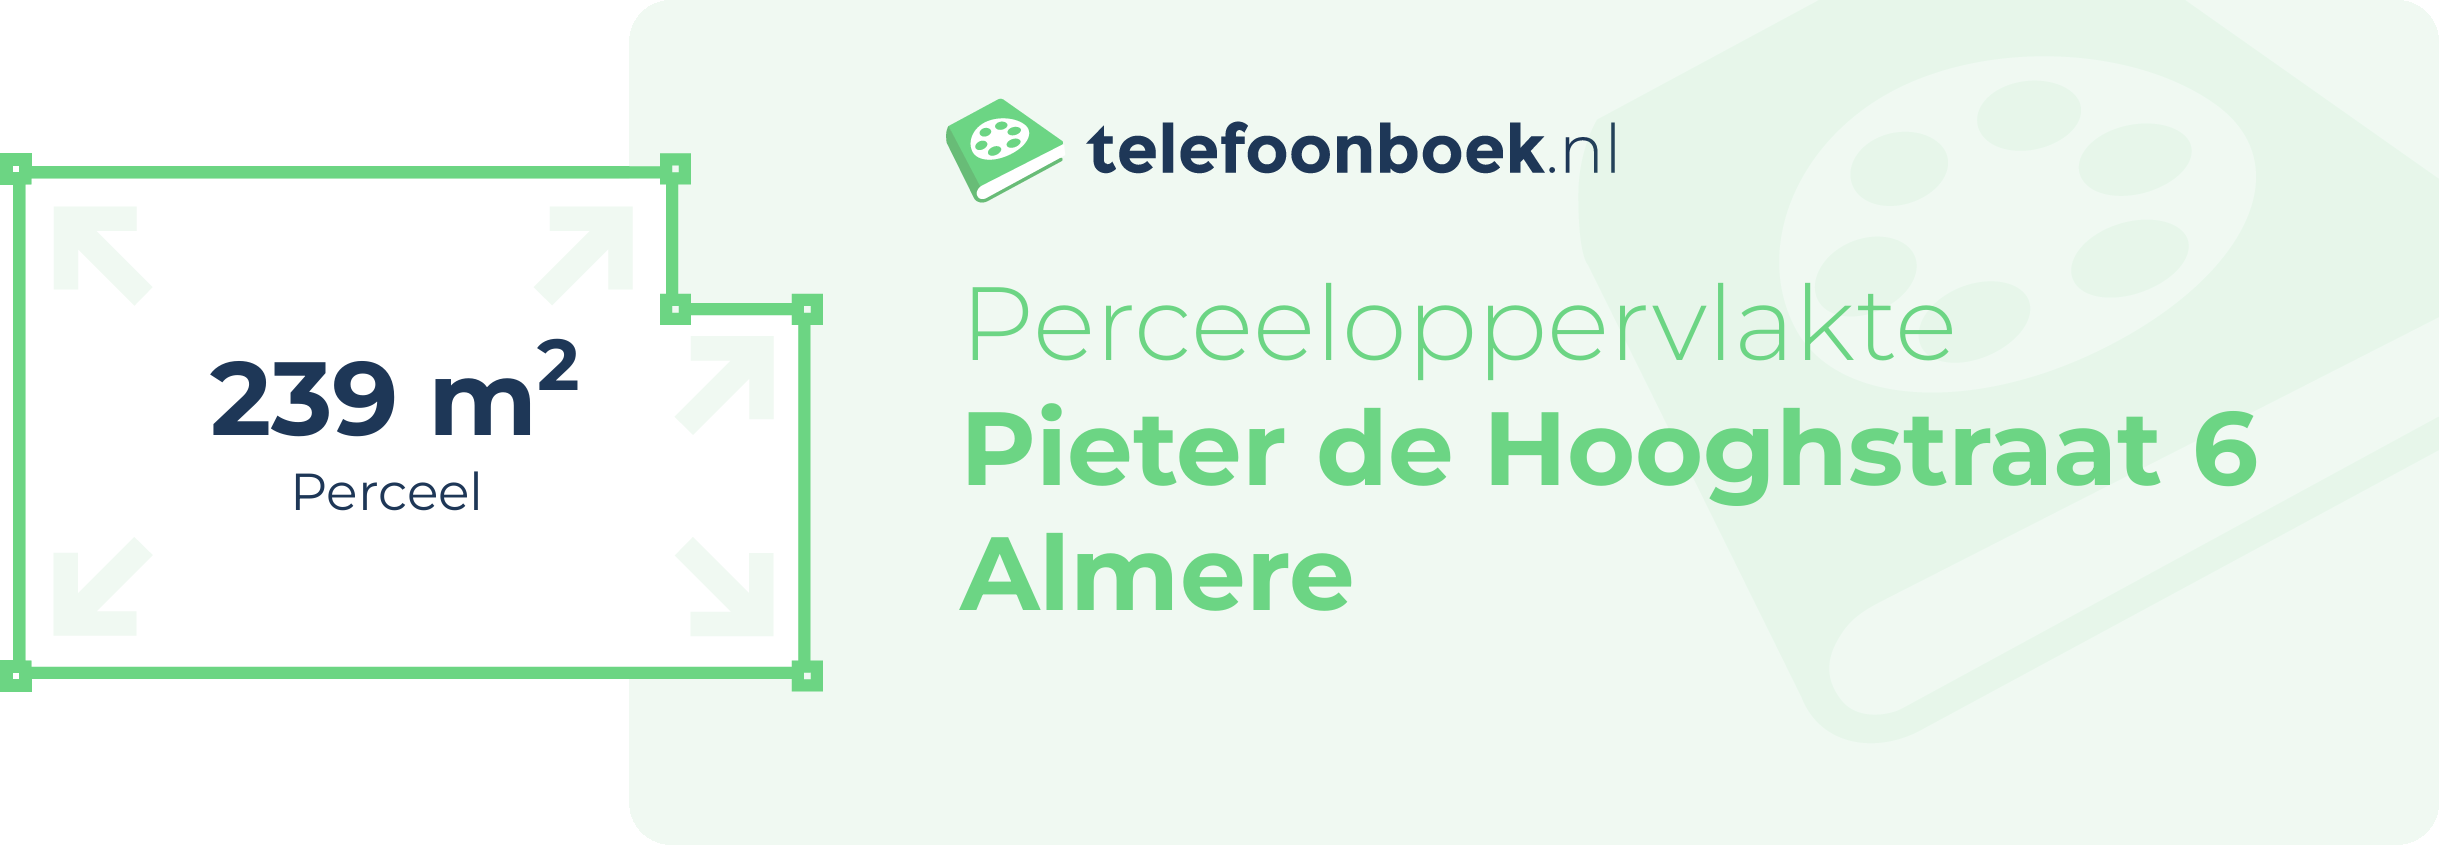 Perceeloppervlakte Pieter De Hooghstraat 6 Almere